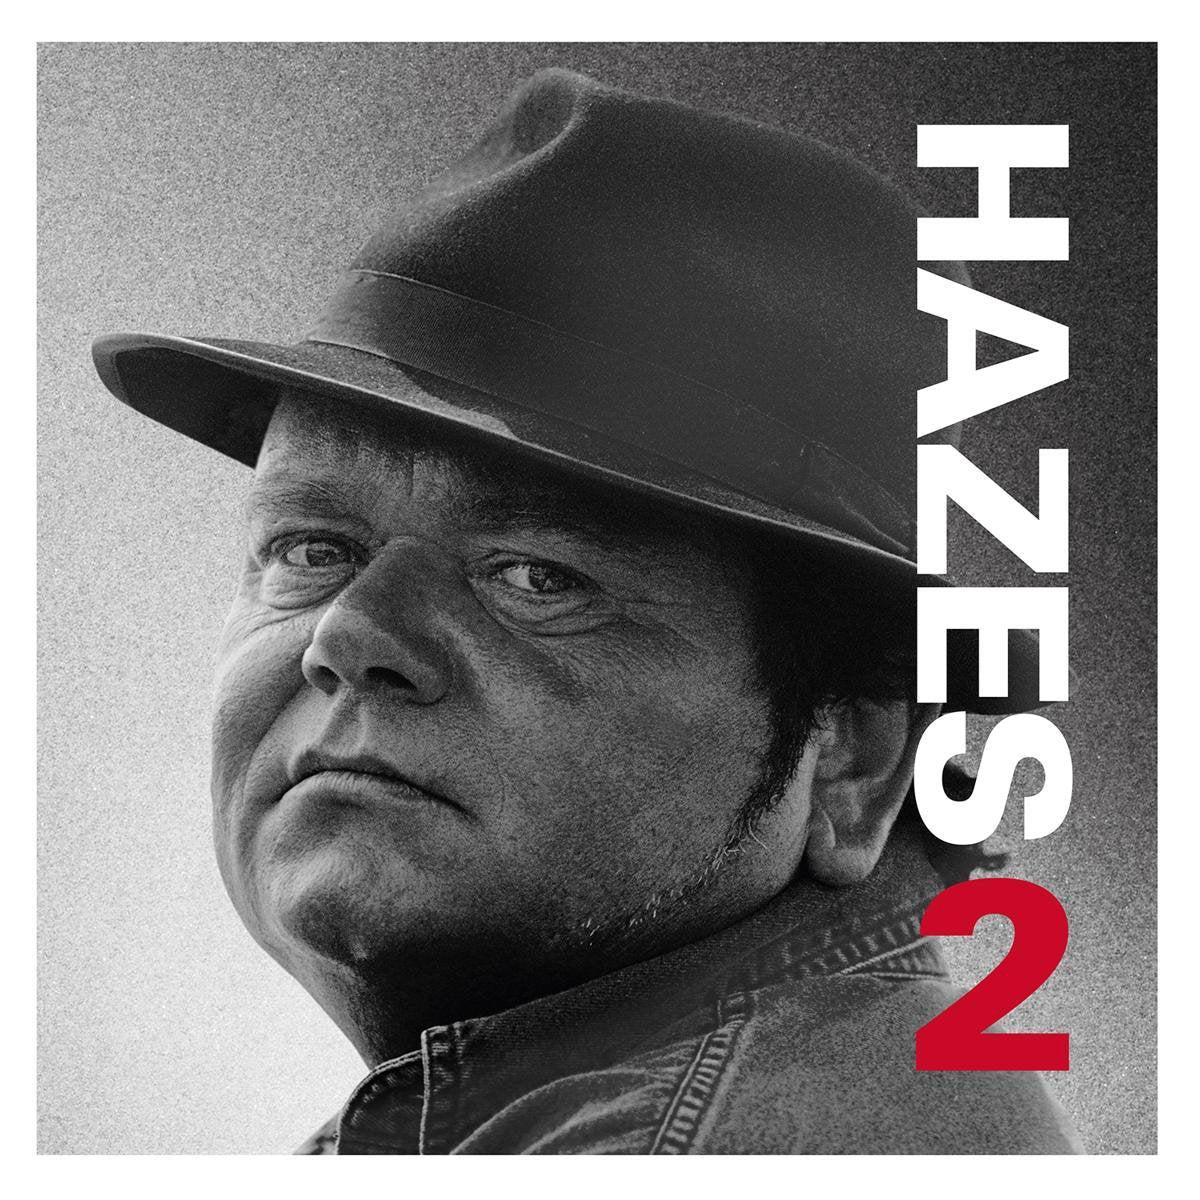 André Hazes - Hazes 2 (Limited edition, silver vinyl) (2LP)